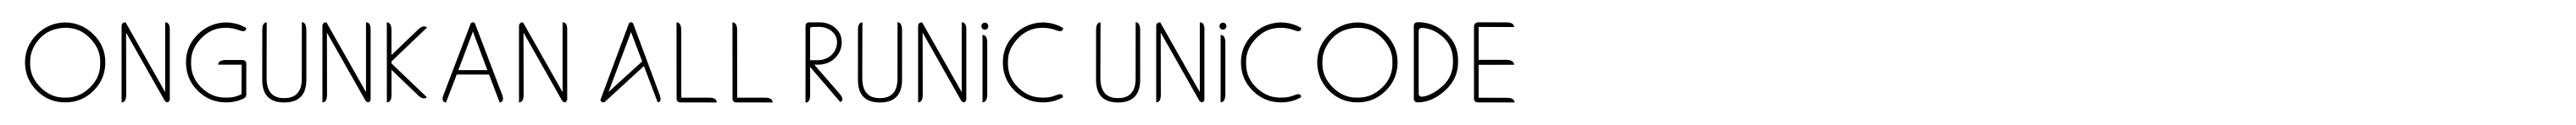 Ongunkan All Runic Unicode